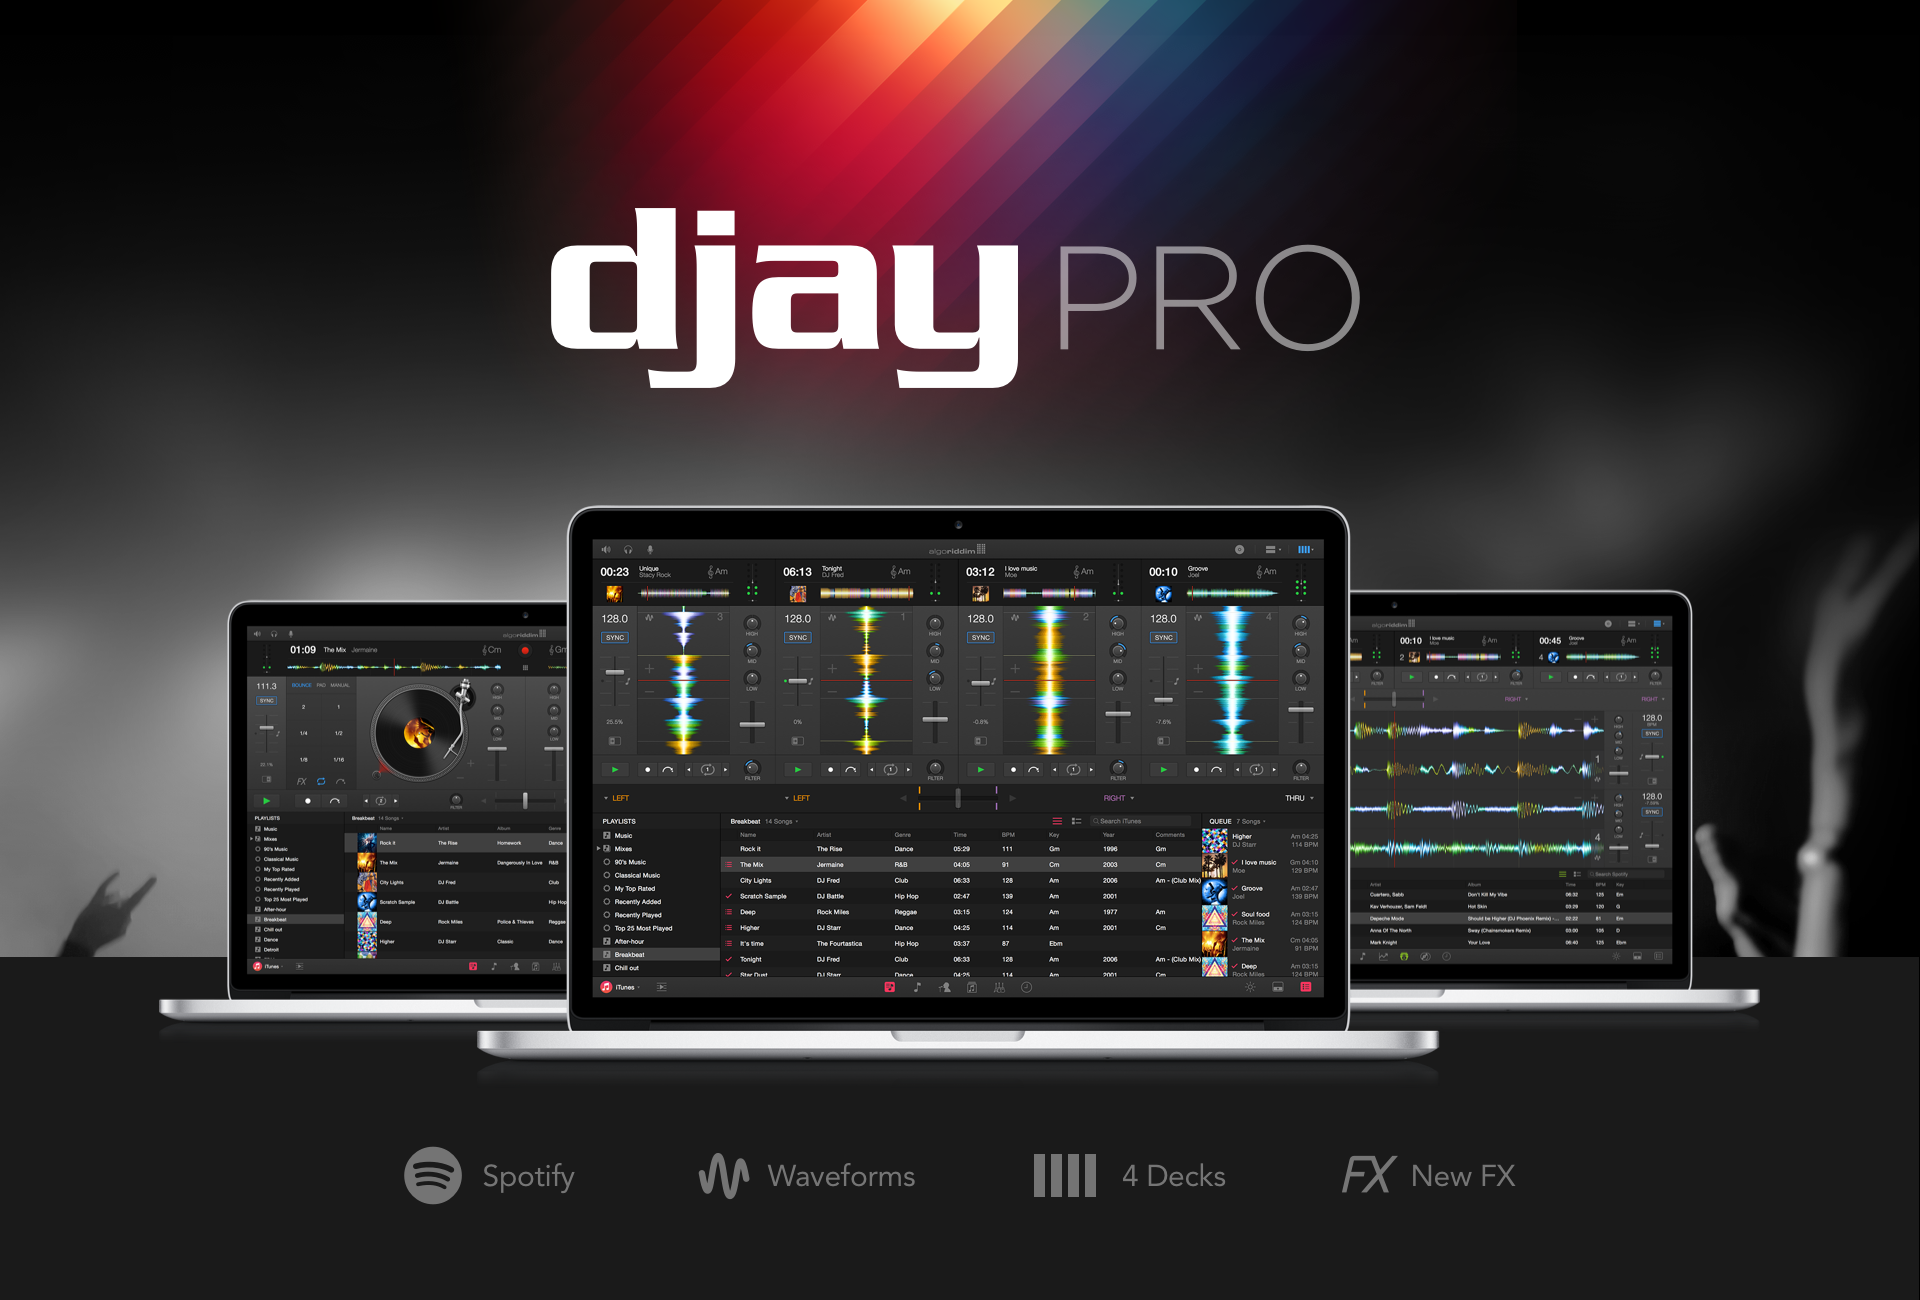 Djay pro auto sync software